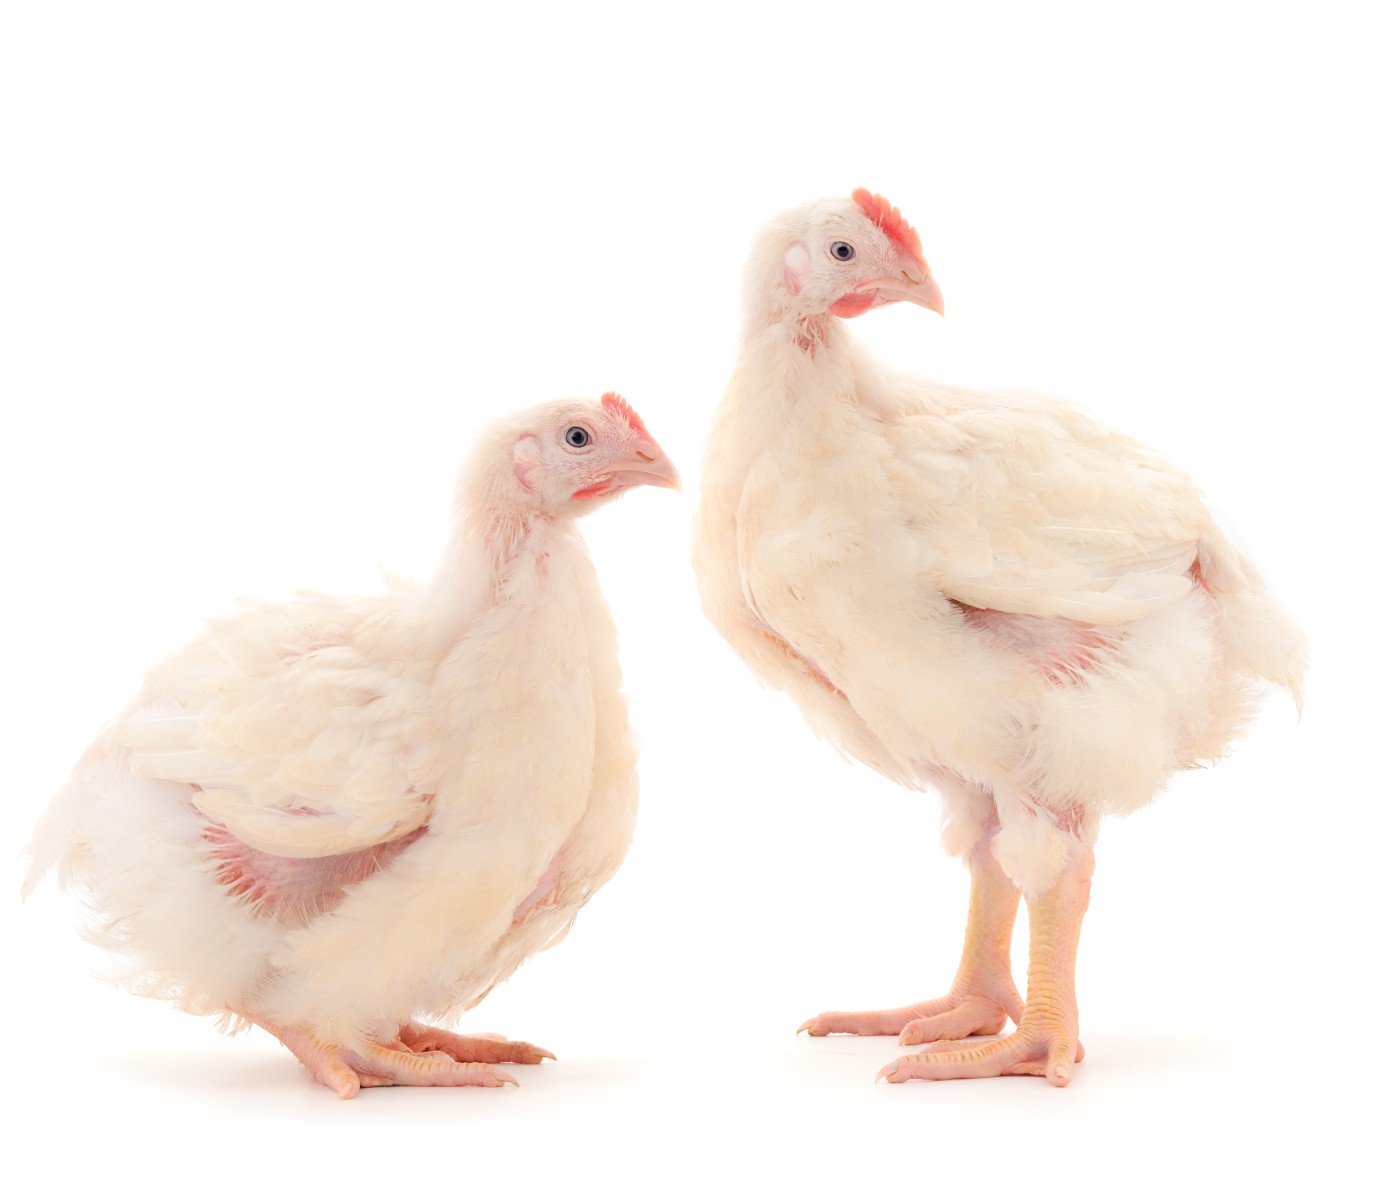 Productores de pollo de EE.UU: Reaccionan ante nuevo marco regulatorio para Salmonella